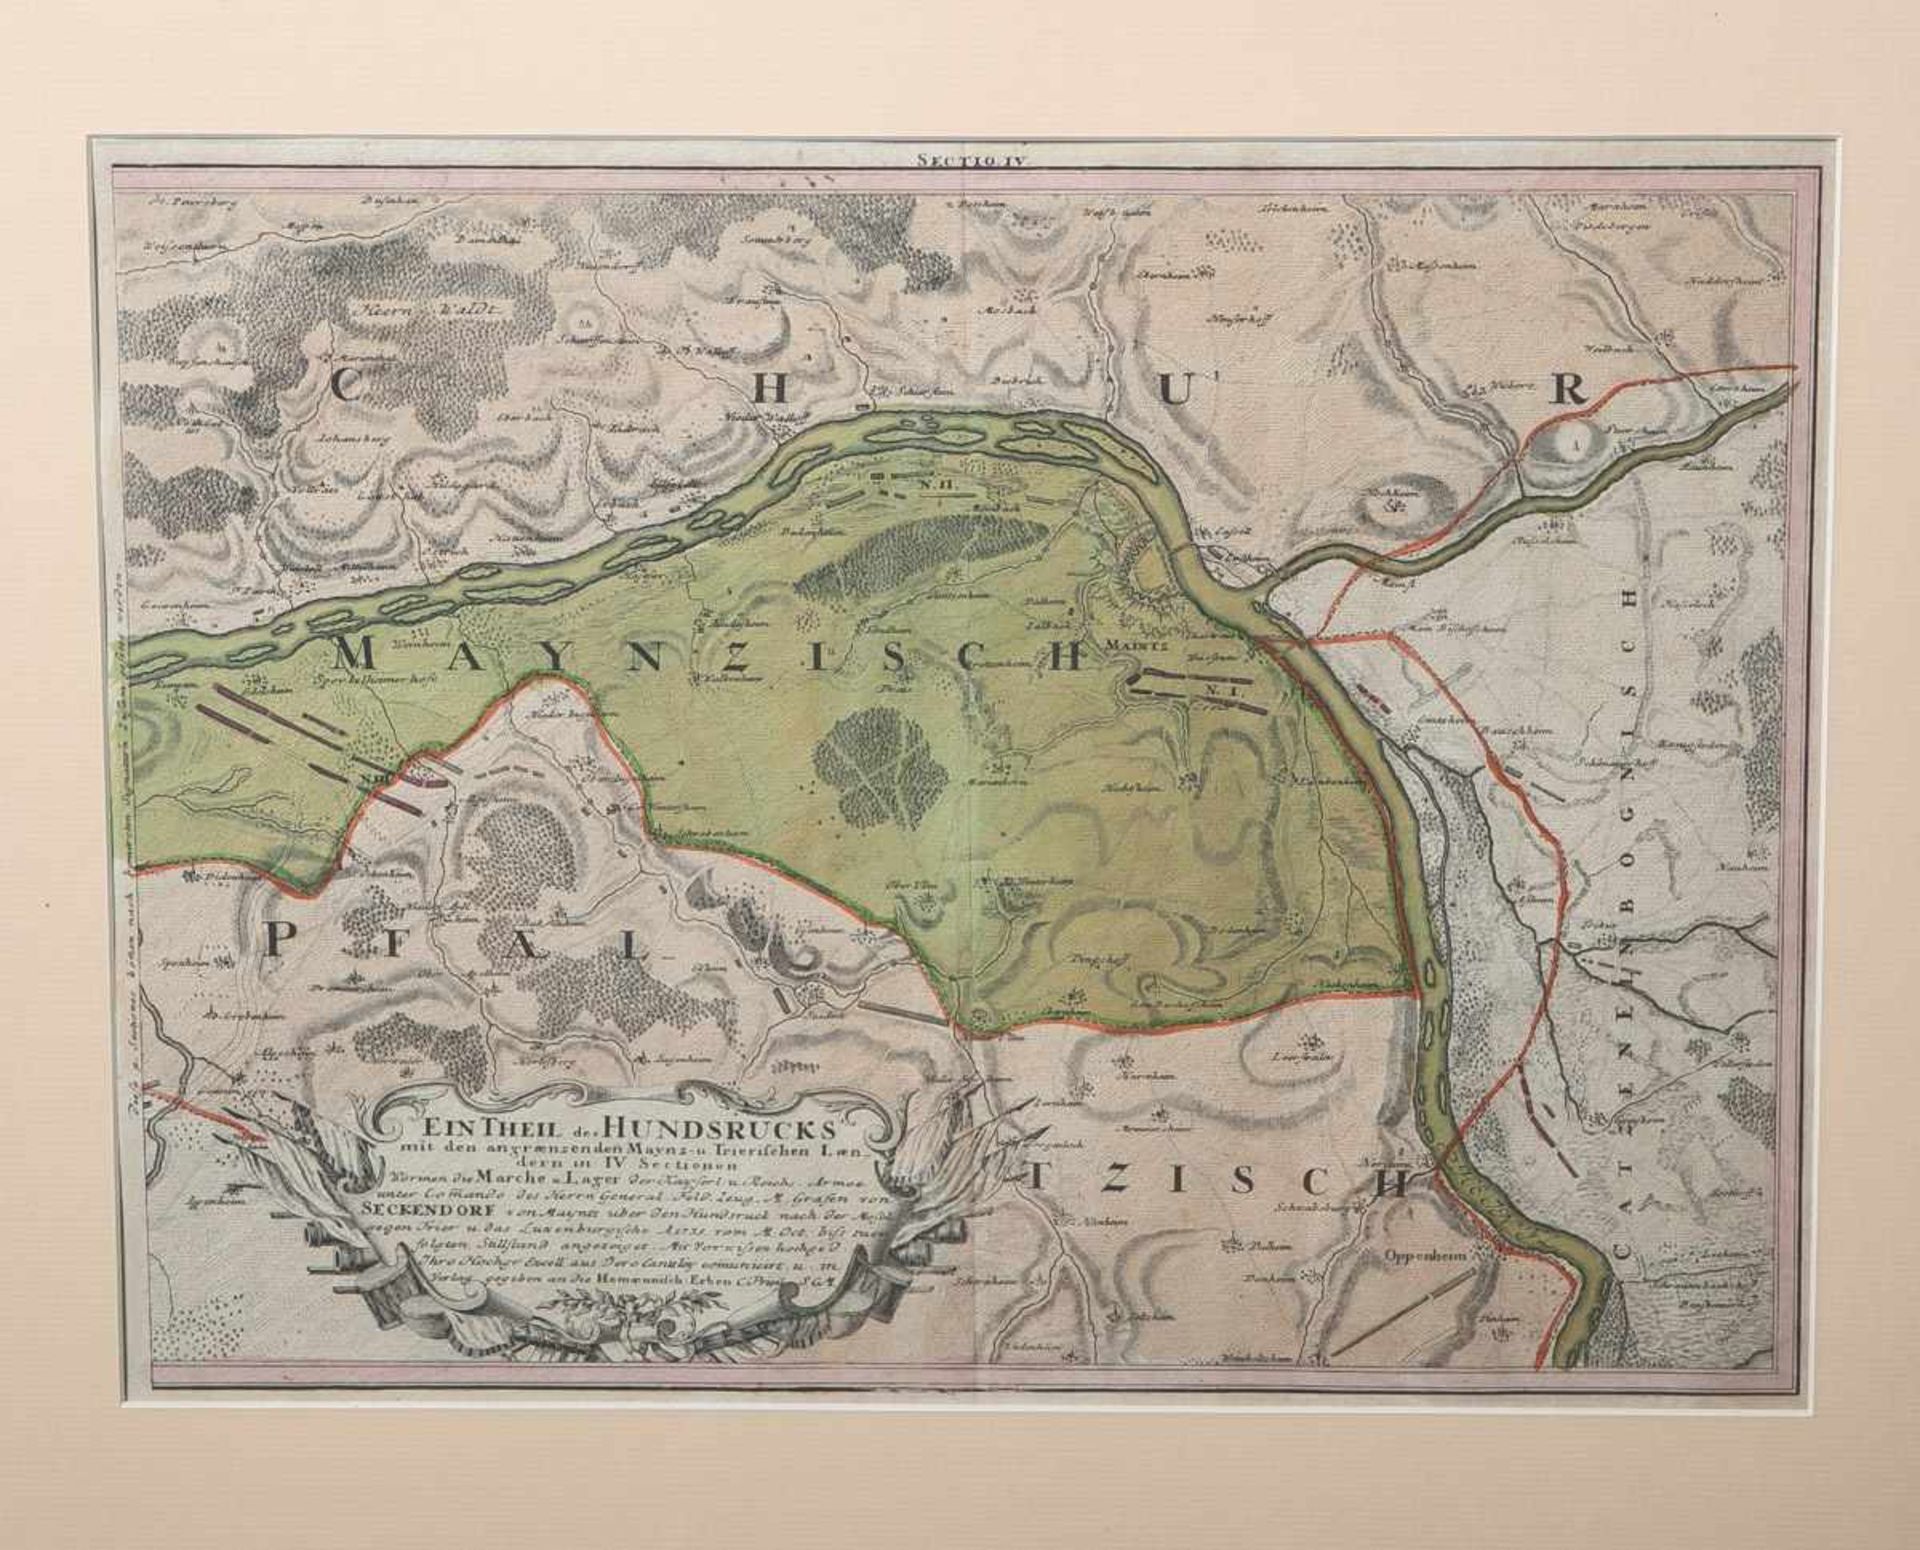 Alte Landkarte von Mainz u. Umgebung im 18. Jahrhundert, Sektion 4 von 4, Blattgröße ca.33 x 44